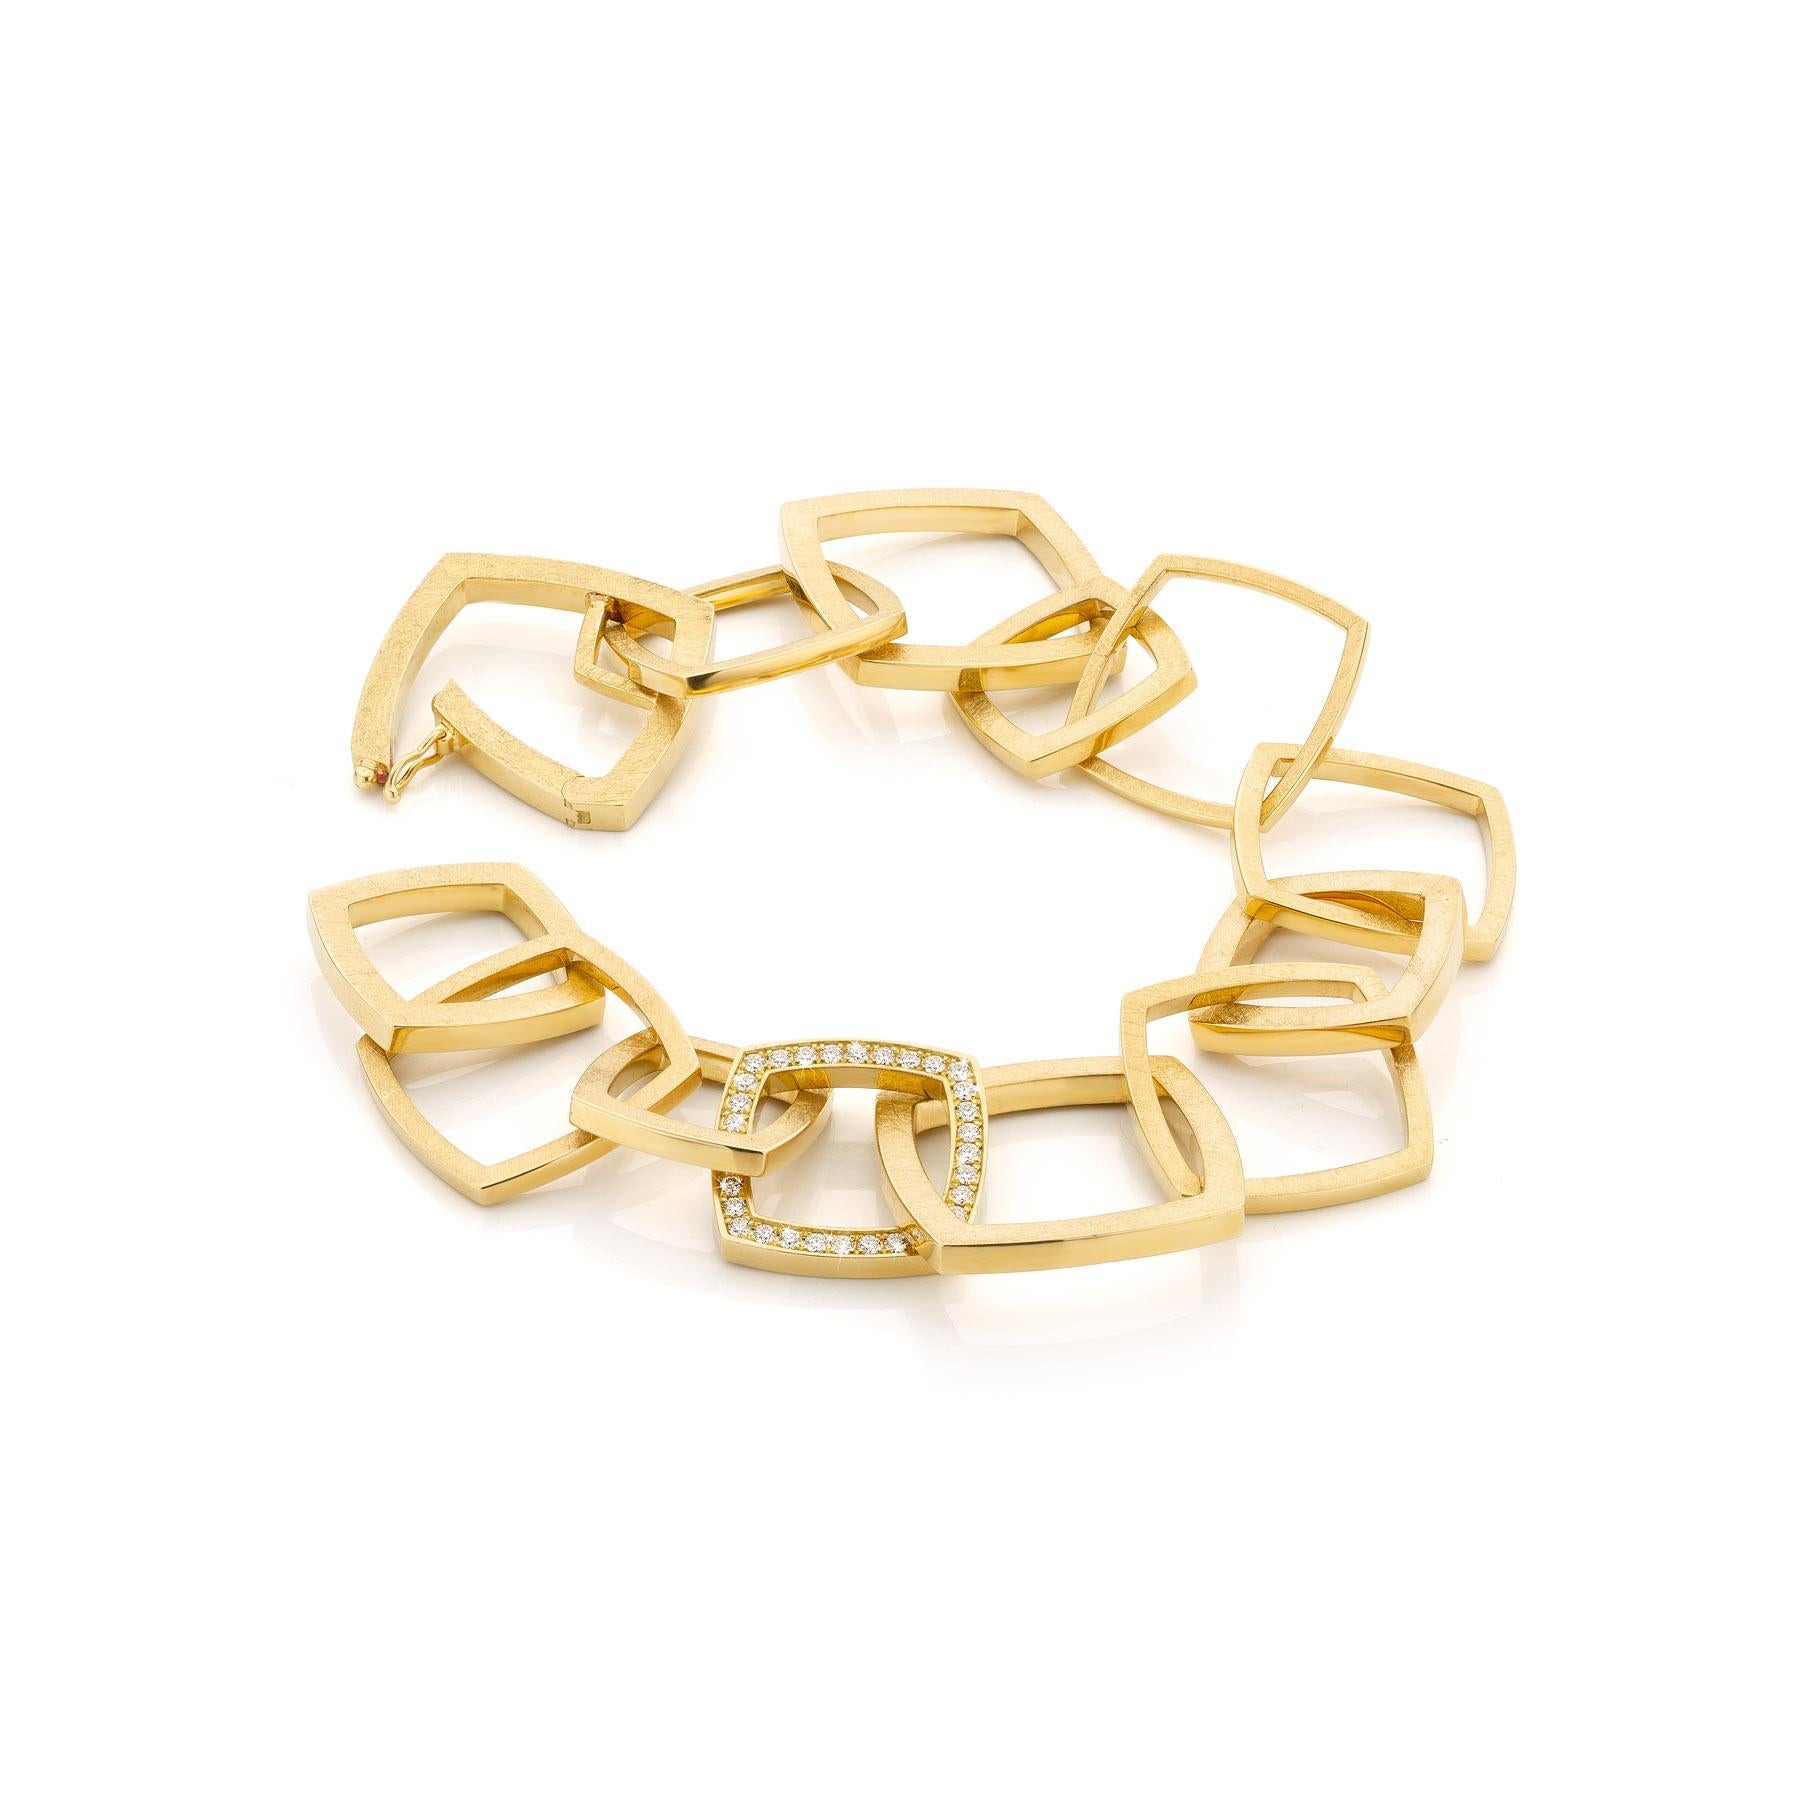 Brilliant Cut Cober square links & 36 brilliant cut Diamonds Yellow Gold Bracelet For Sale